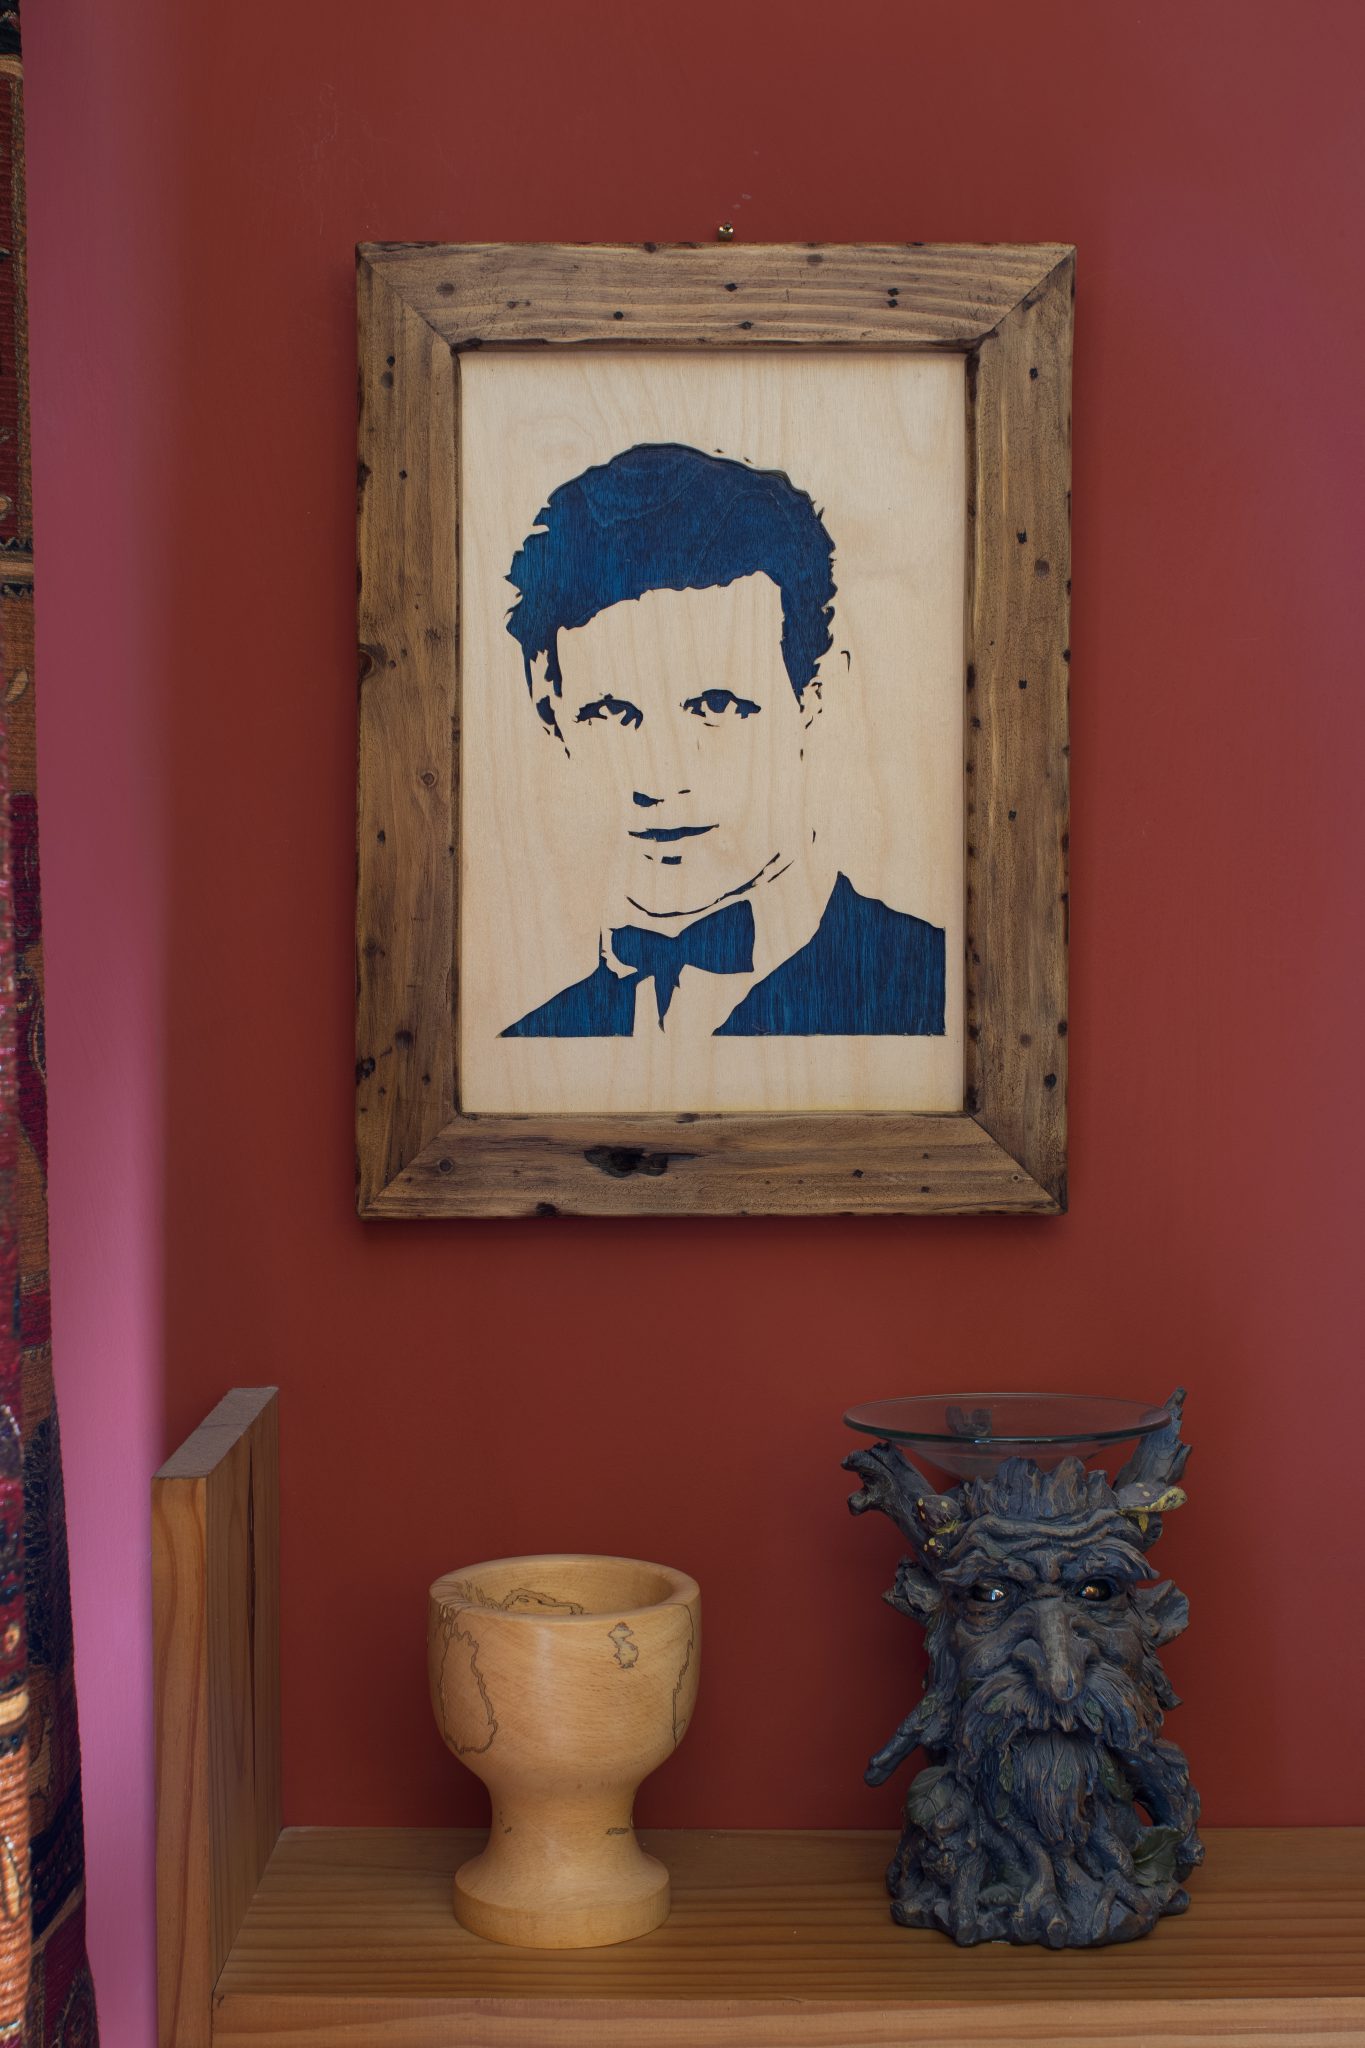 Handmade, framed Wooden Portrait of Matt Smith as Doctor who